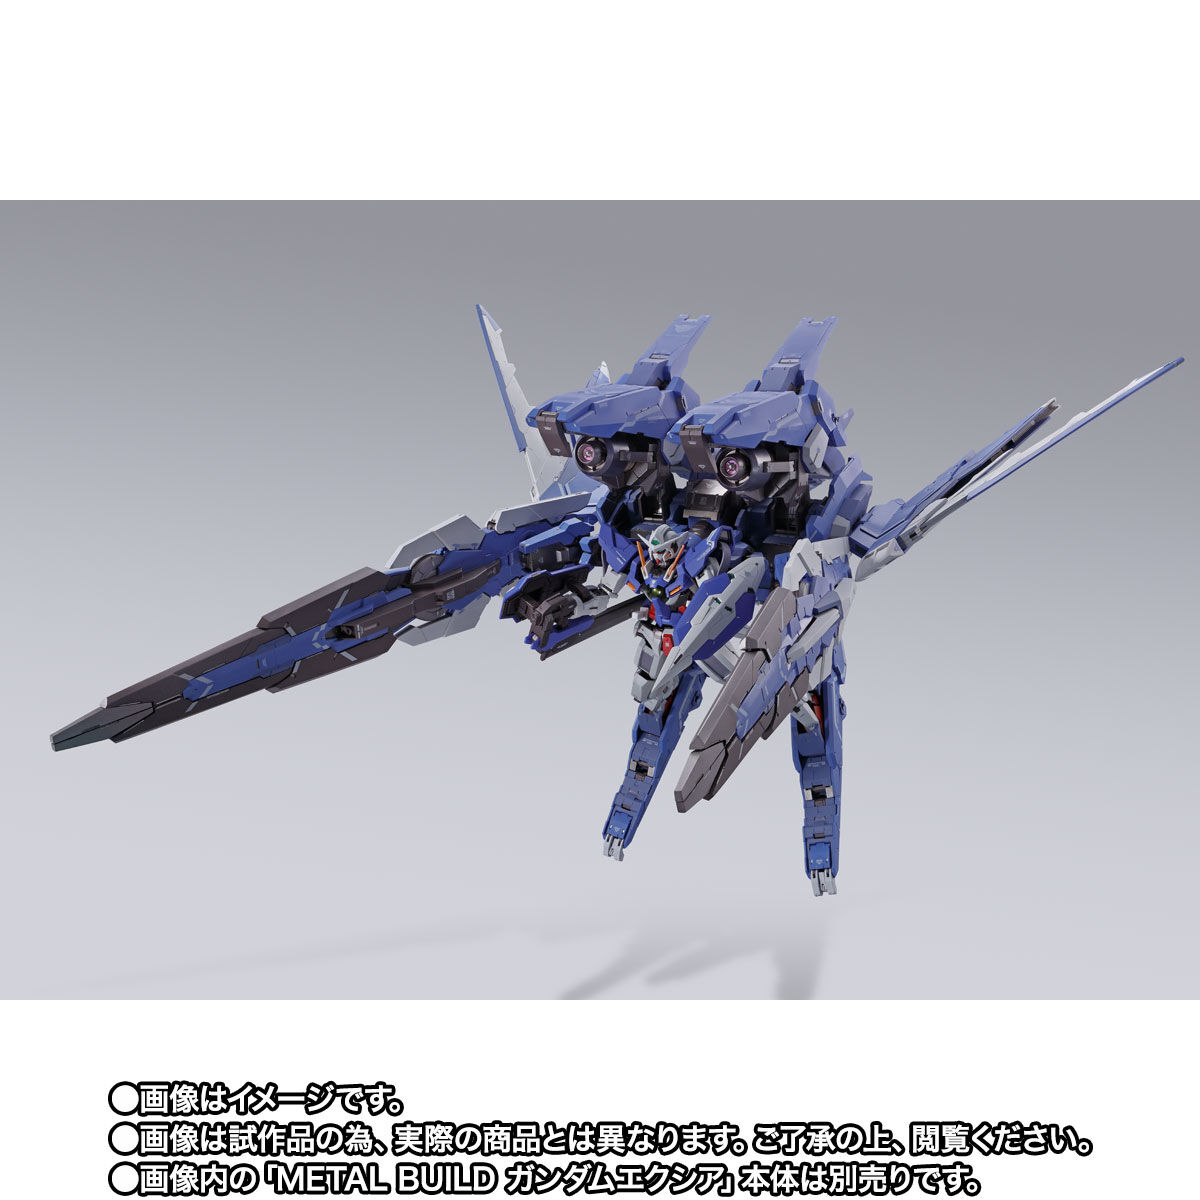 Metal Build GNR-001E GN Arms Type Exia for Gundam 00 Series